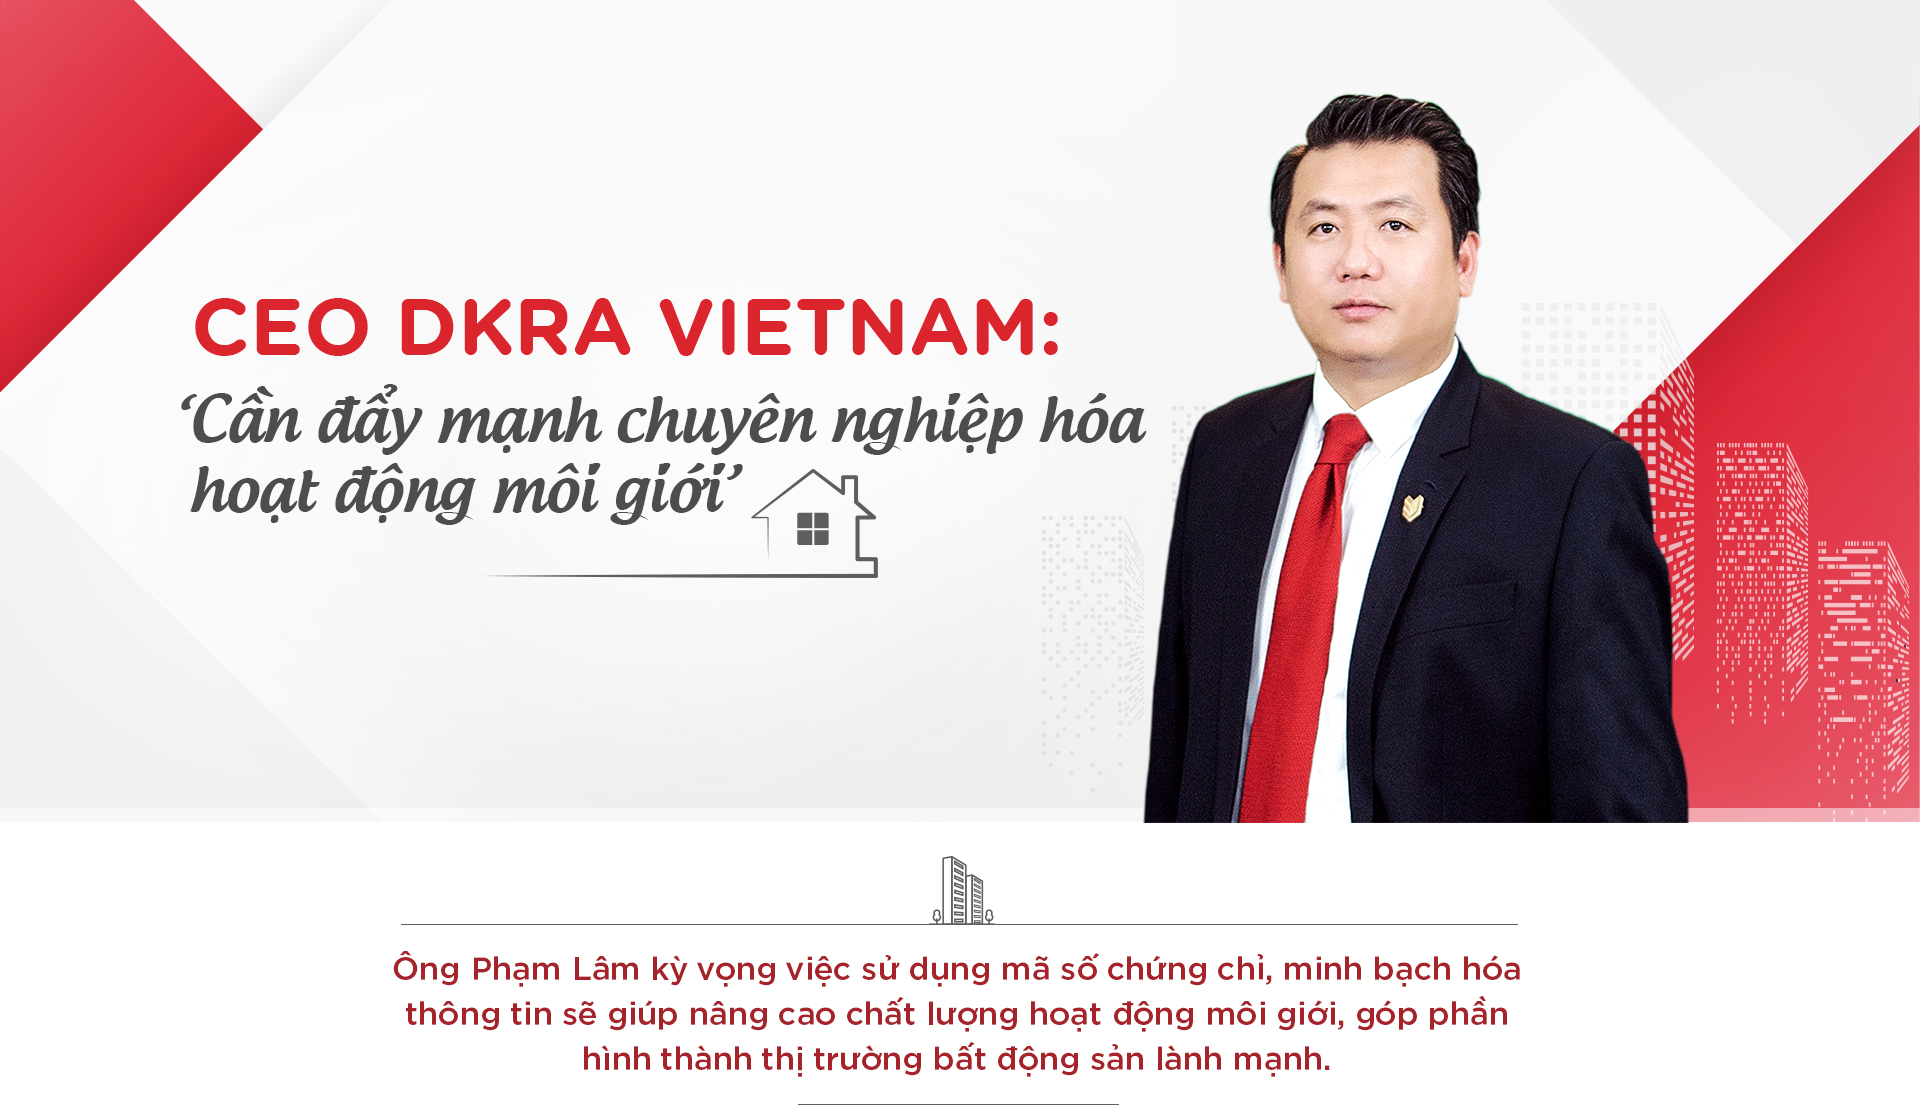 CEO DKRA Vietnam: 'Cần đẩy mạnh chuyên nghiệp hóa hoạt động môi giới'